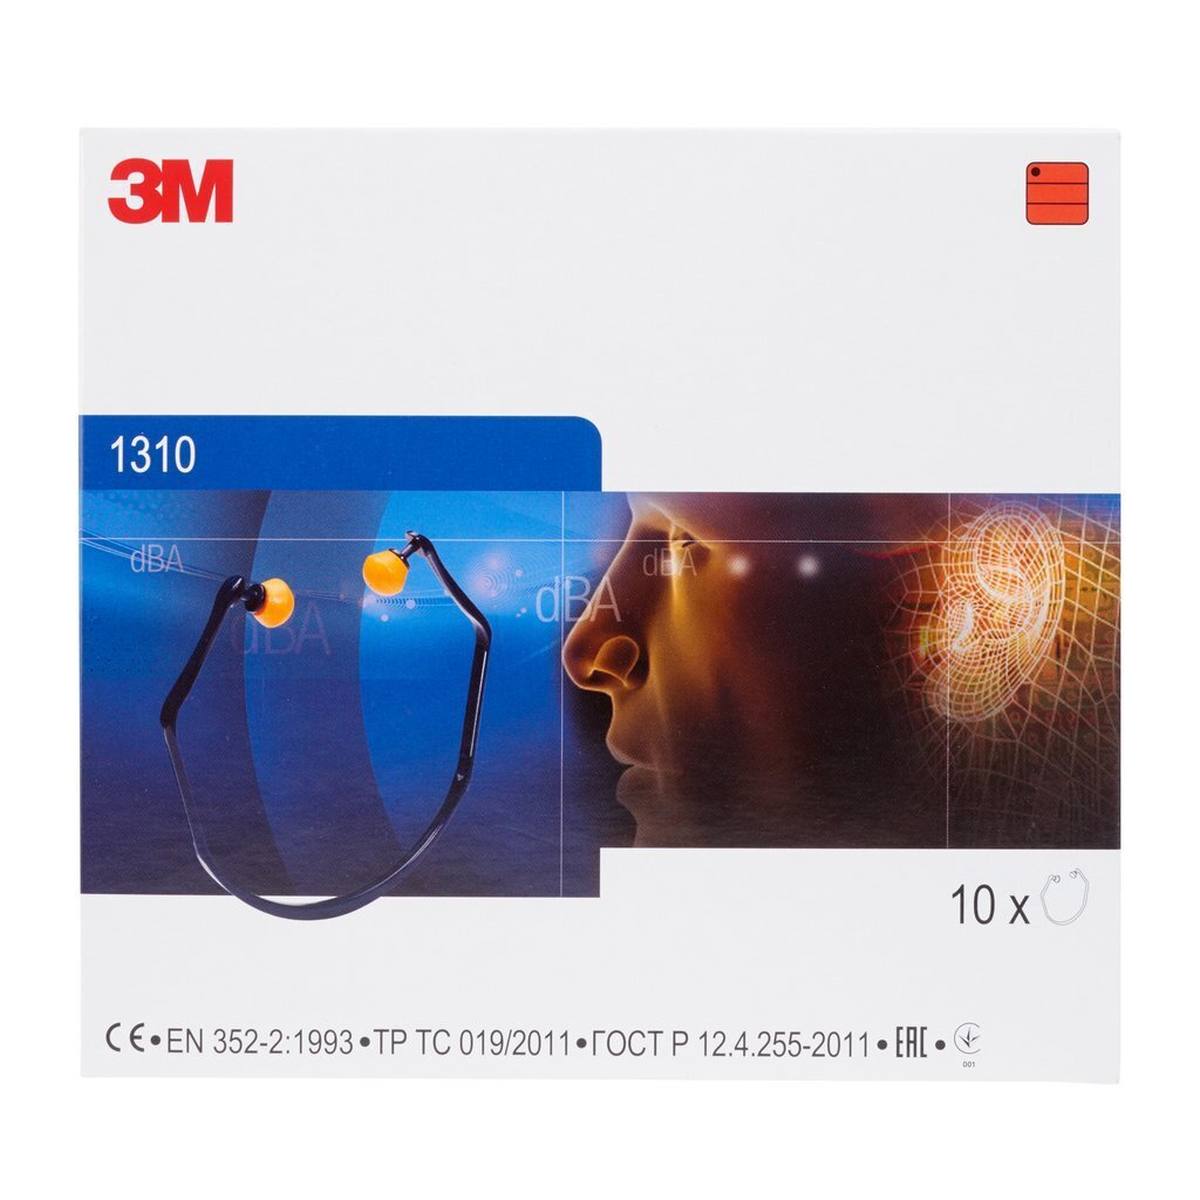 Cuffie auricolari 3M 1310, particolarmente confortevoli grazie al design elasticizzato dell'auricolare, SNR = 26 dB